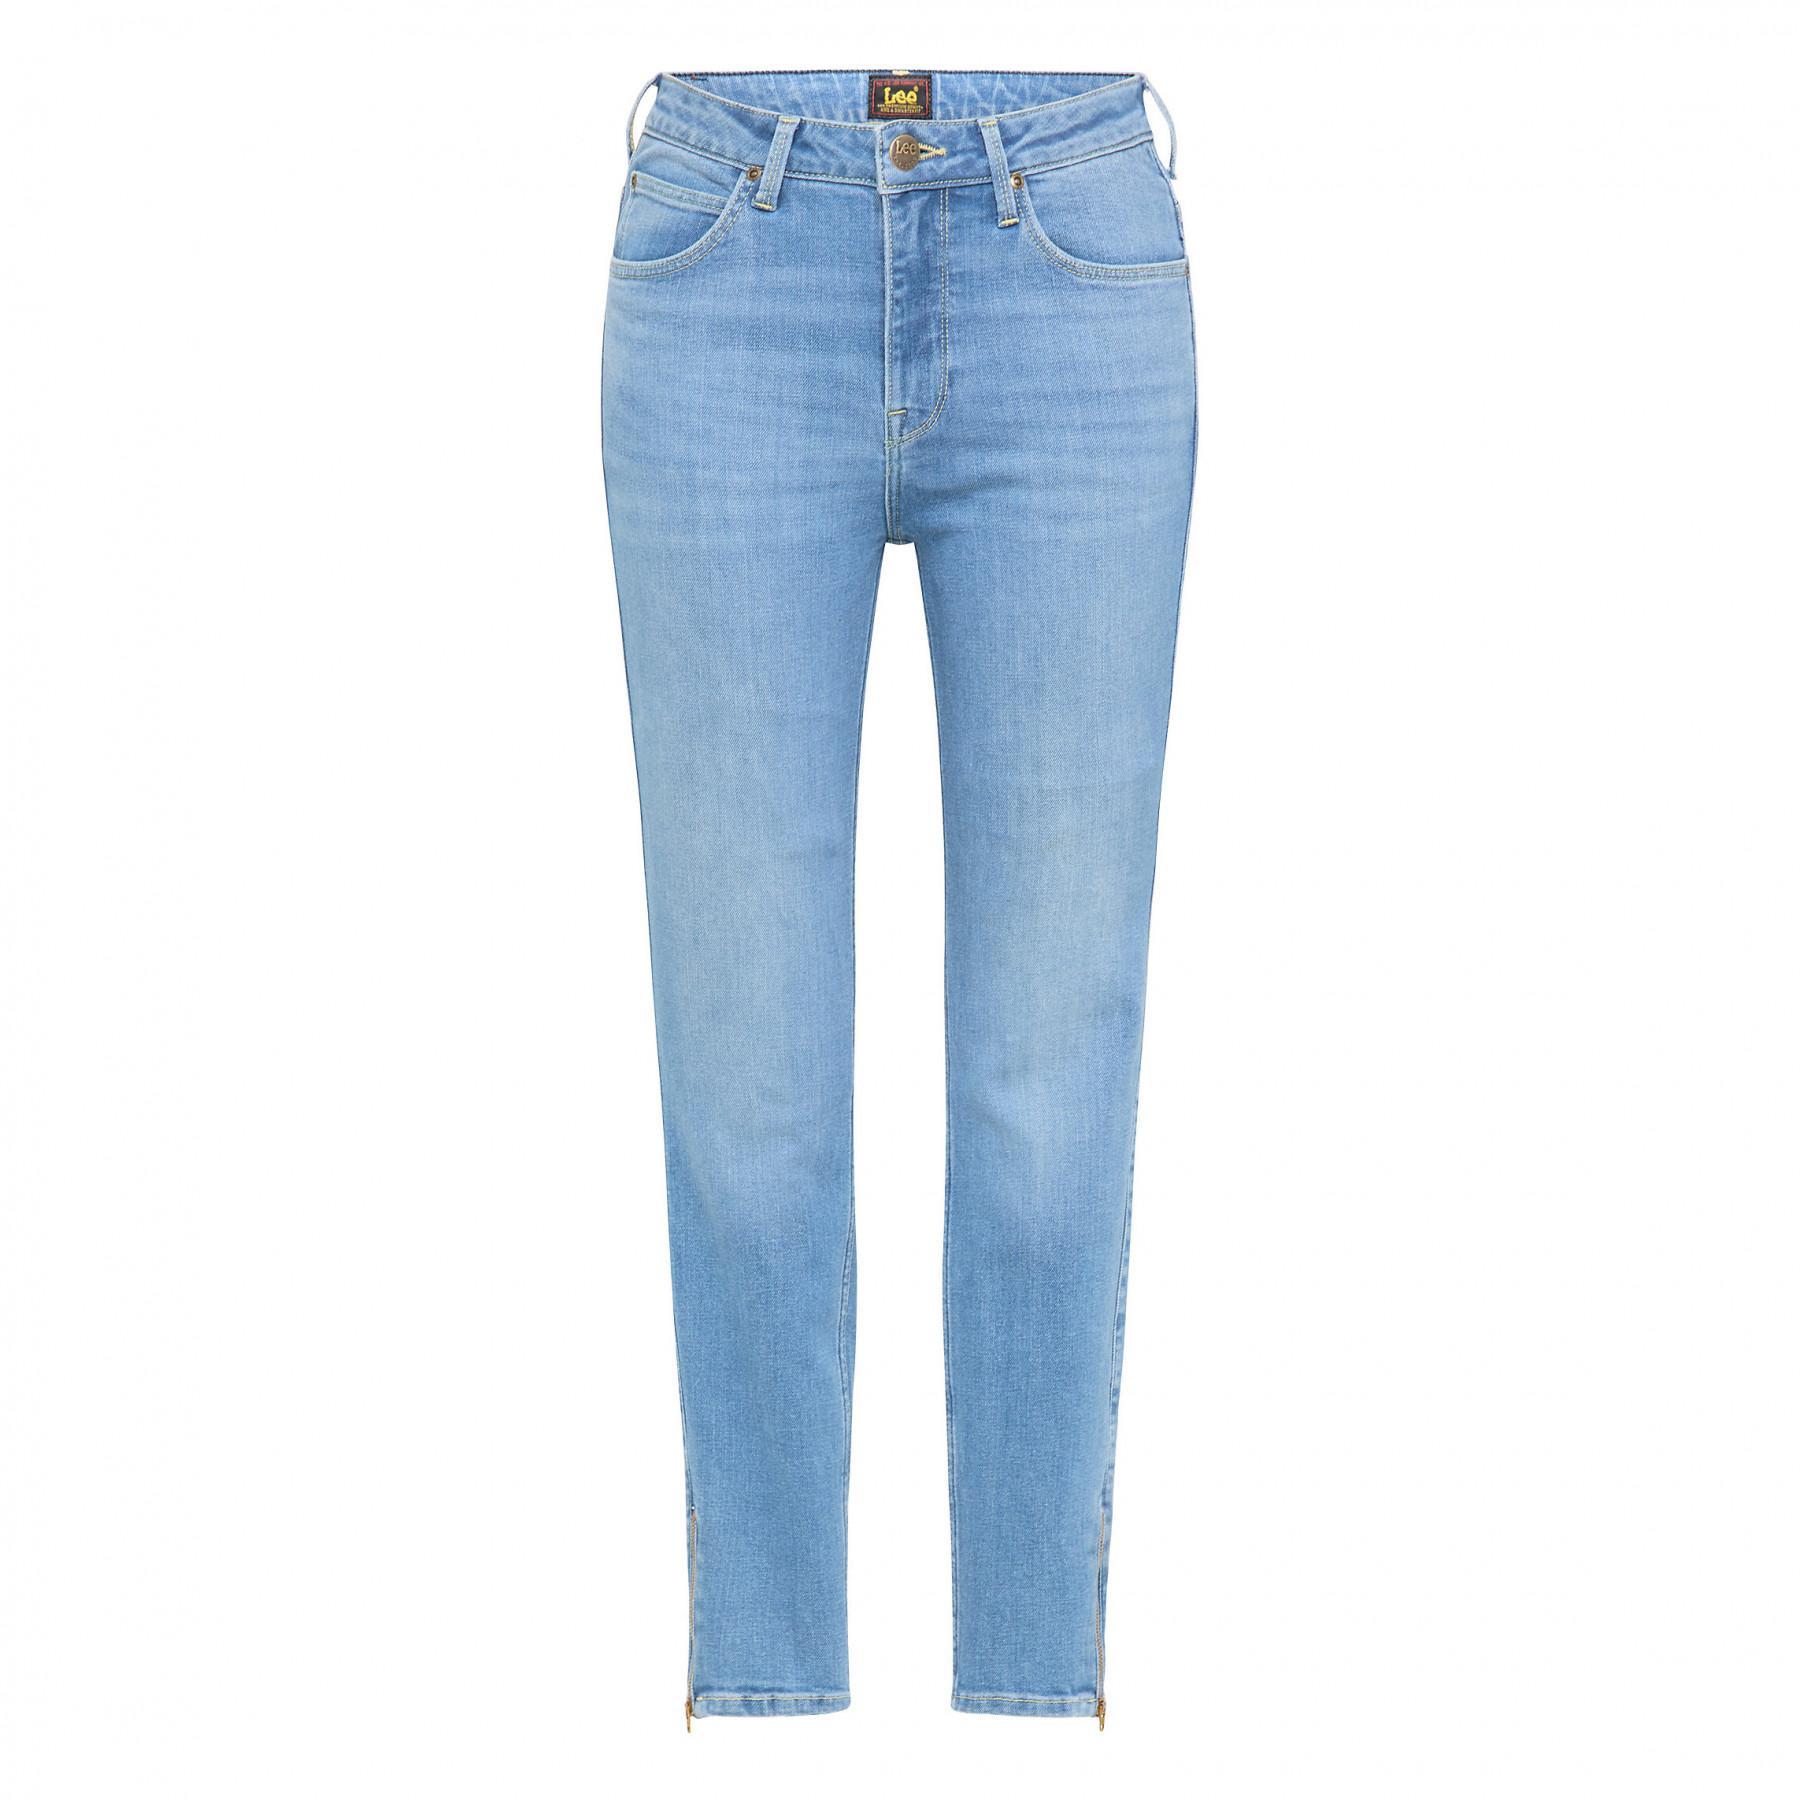 Women's jeans Lee Scarlett High Zip